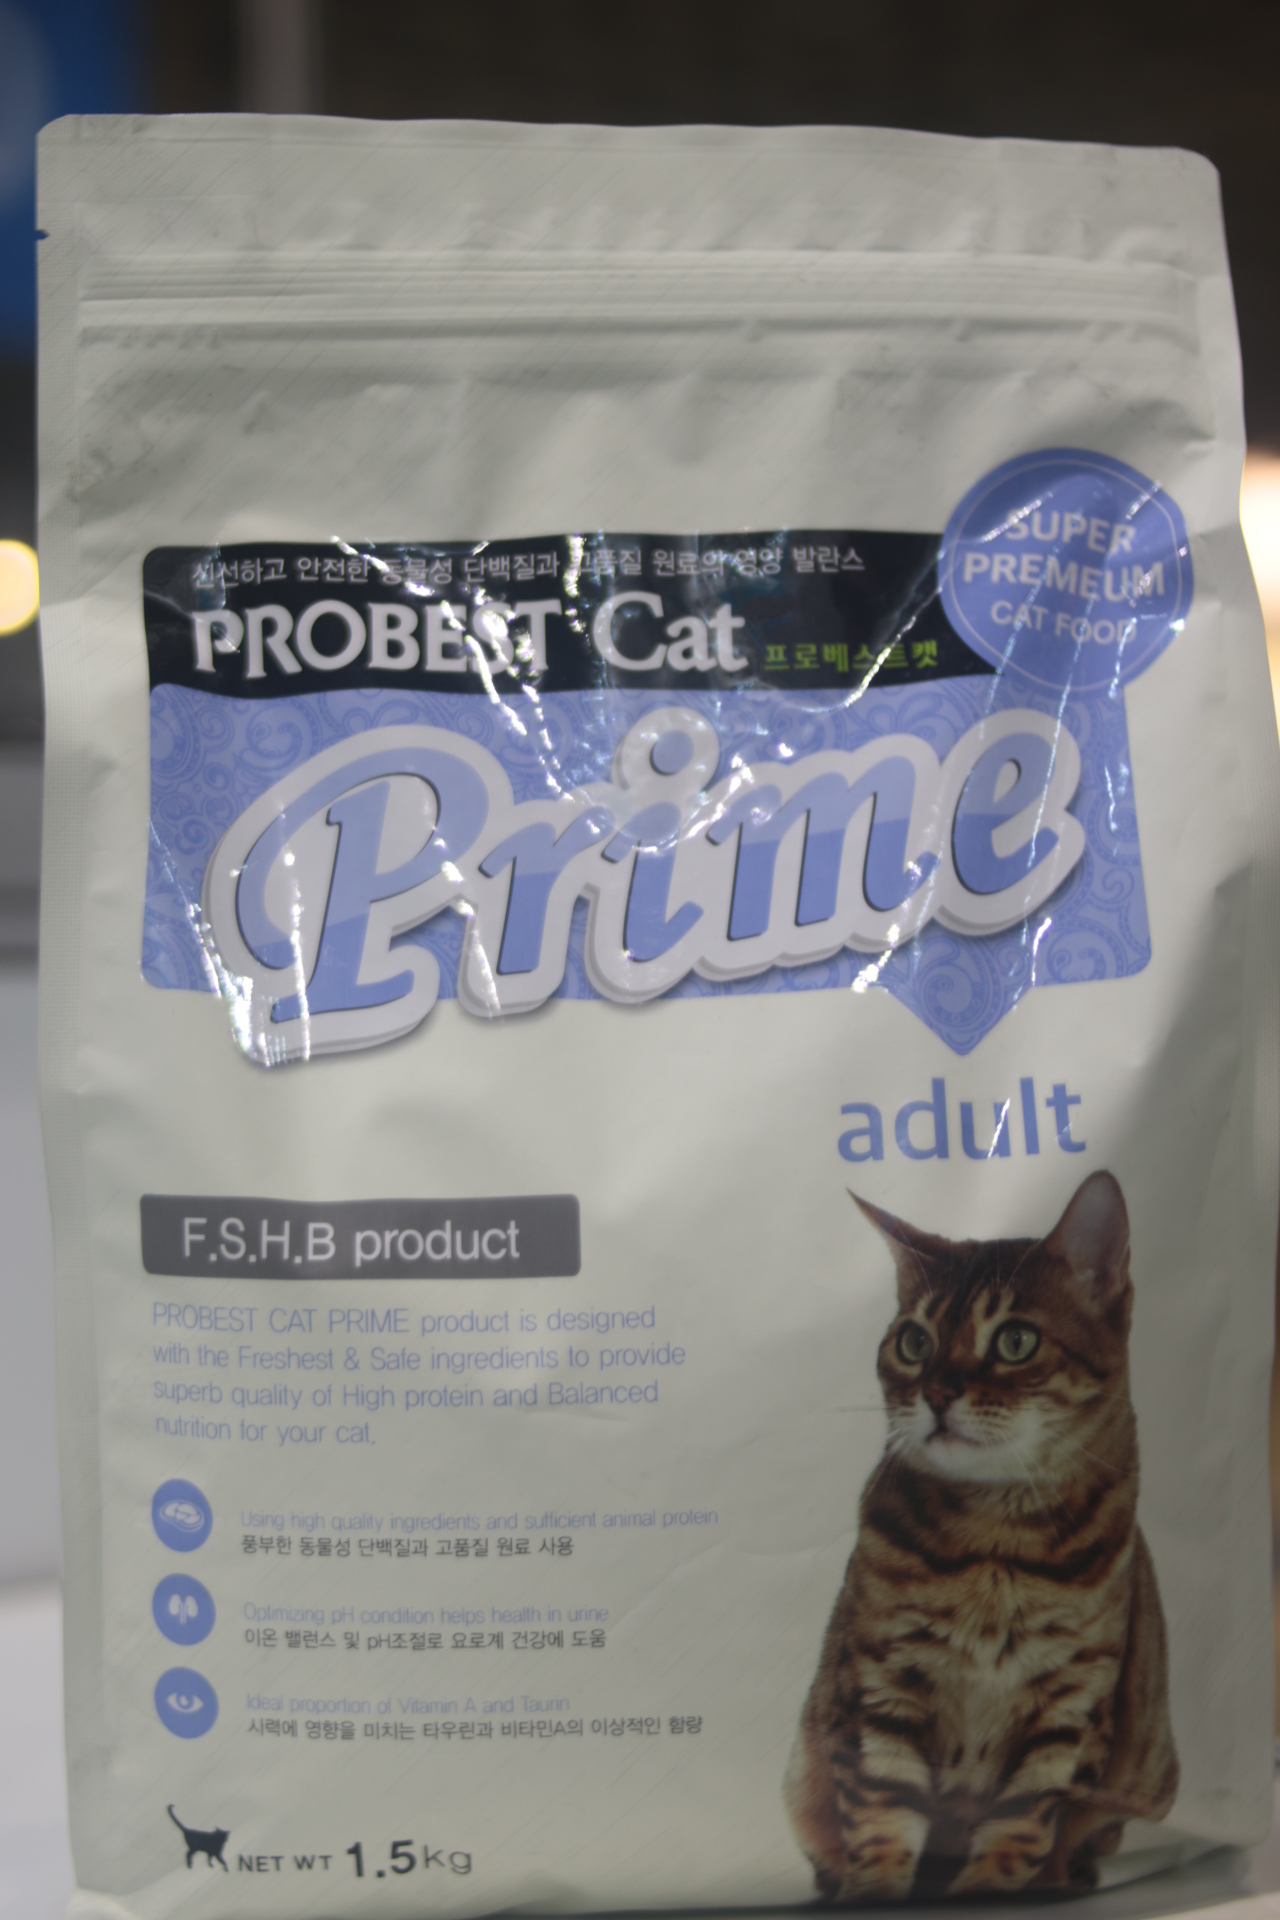 寶倍頂級成貓配方
Probest Cat Prime Adult